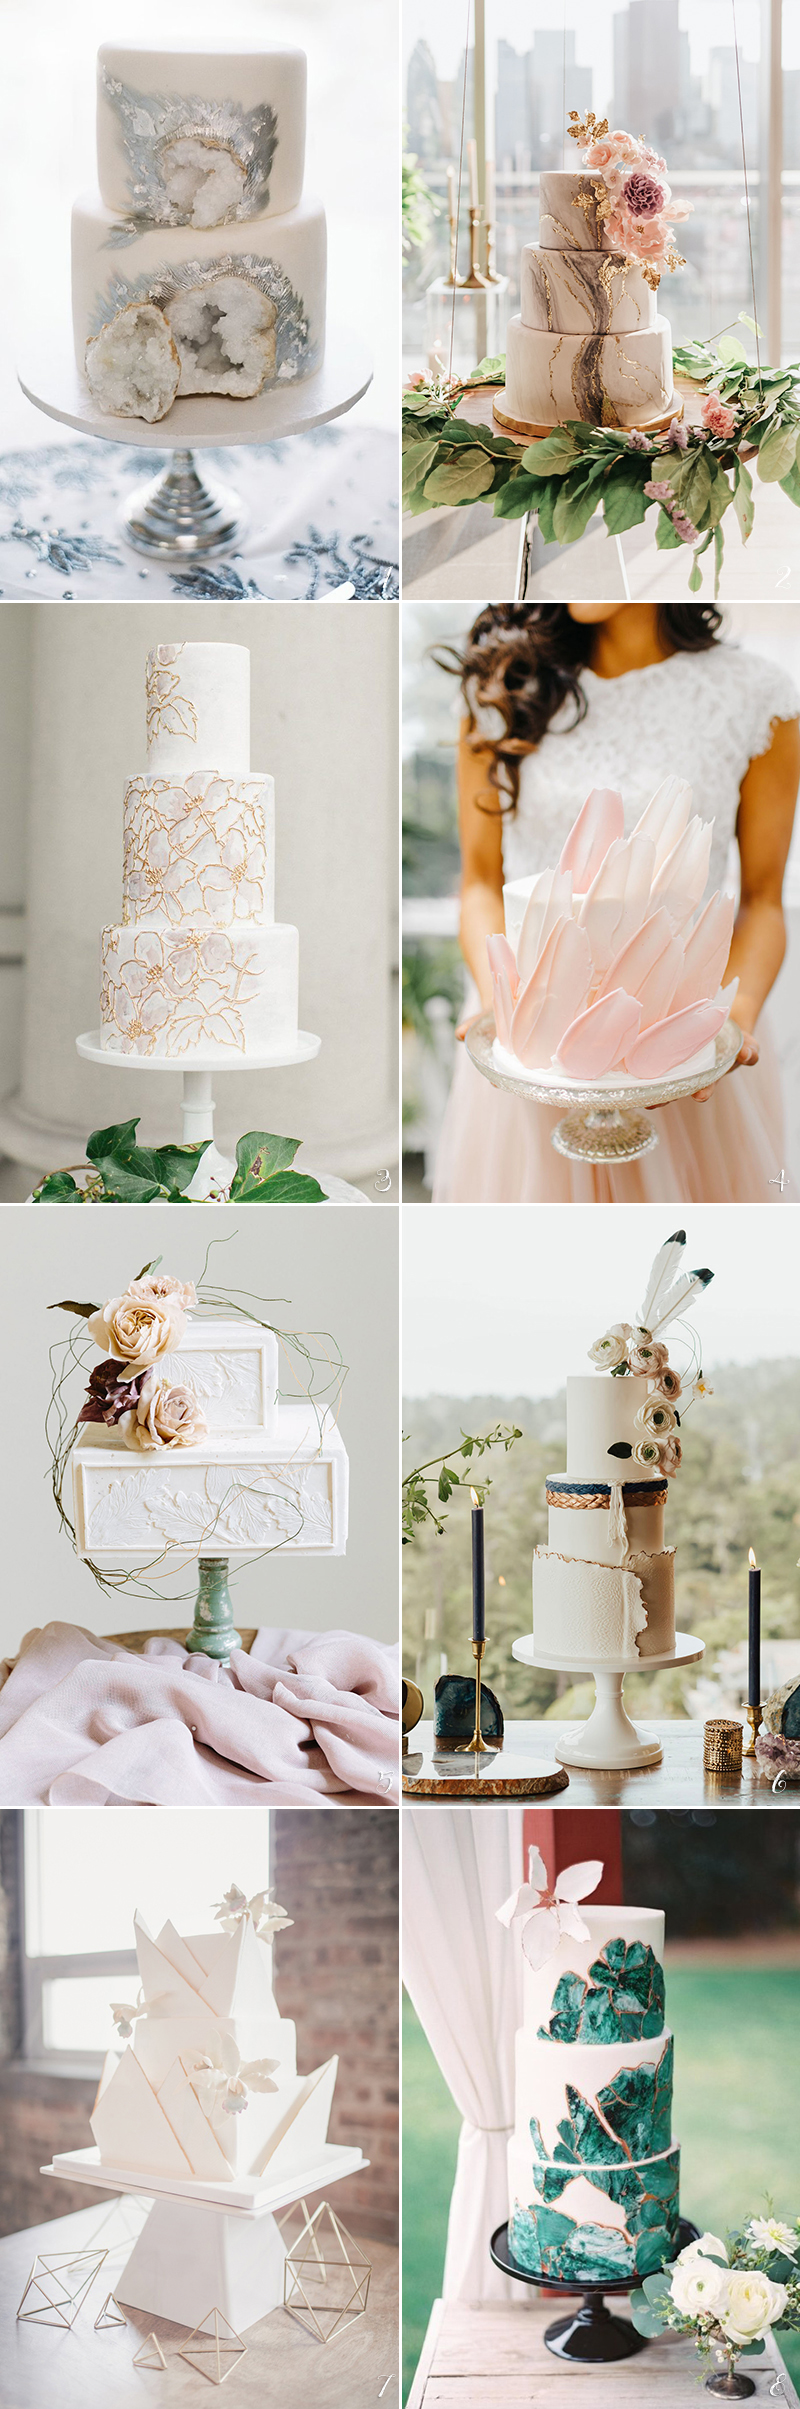 紋理結婚婚禮蛋糕